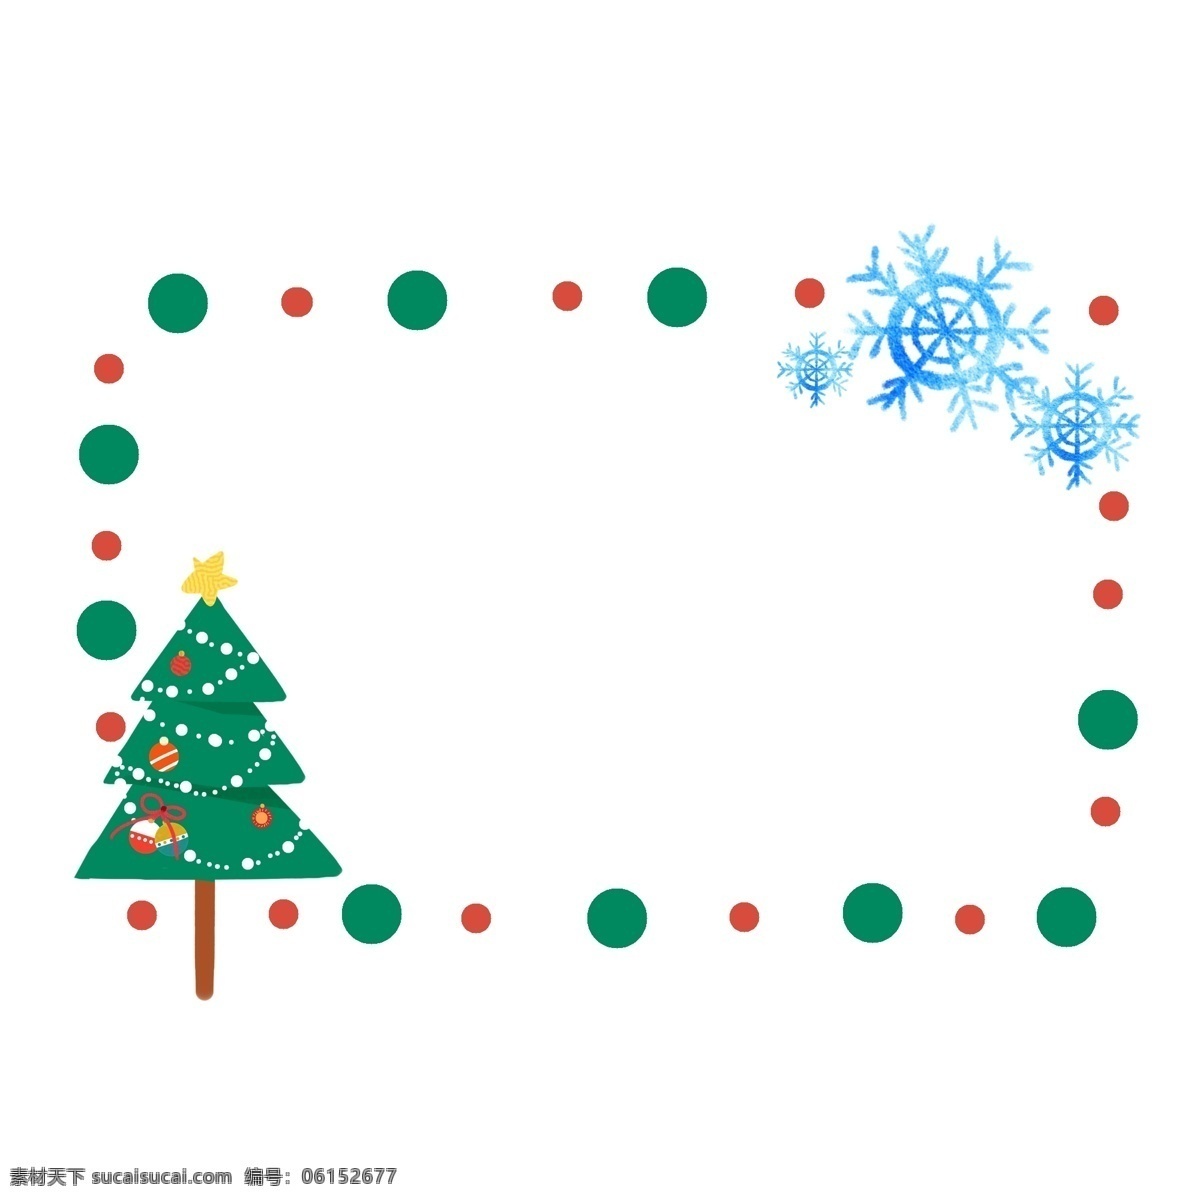 卡通 绿色 圣诞树 边框 绿色圣诞树 绿色树木 装饰 绿色圆点边框 蓝色雪花边框 圣诞节边框